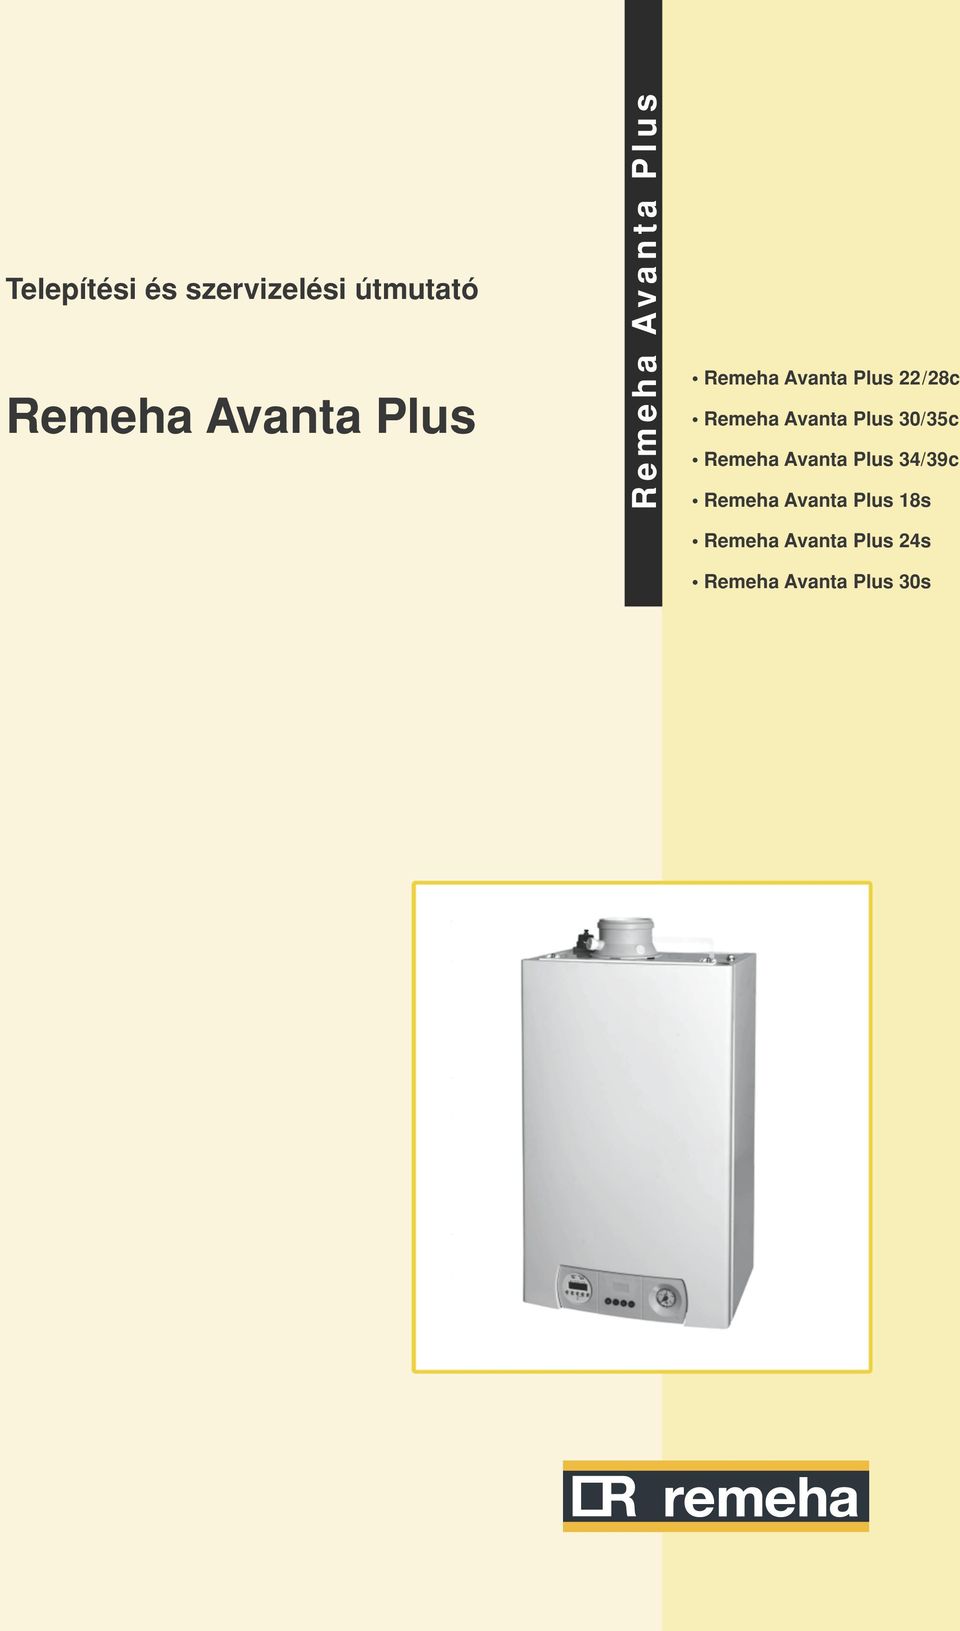 Avanta Plus 30/35c Remeha Avanta Plus 34/39c Remeha